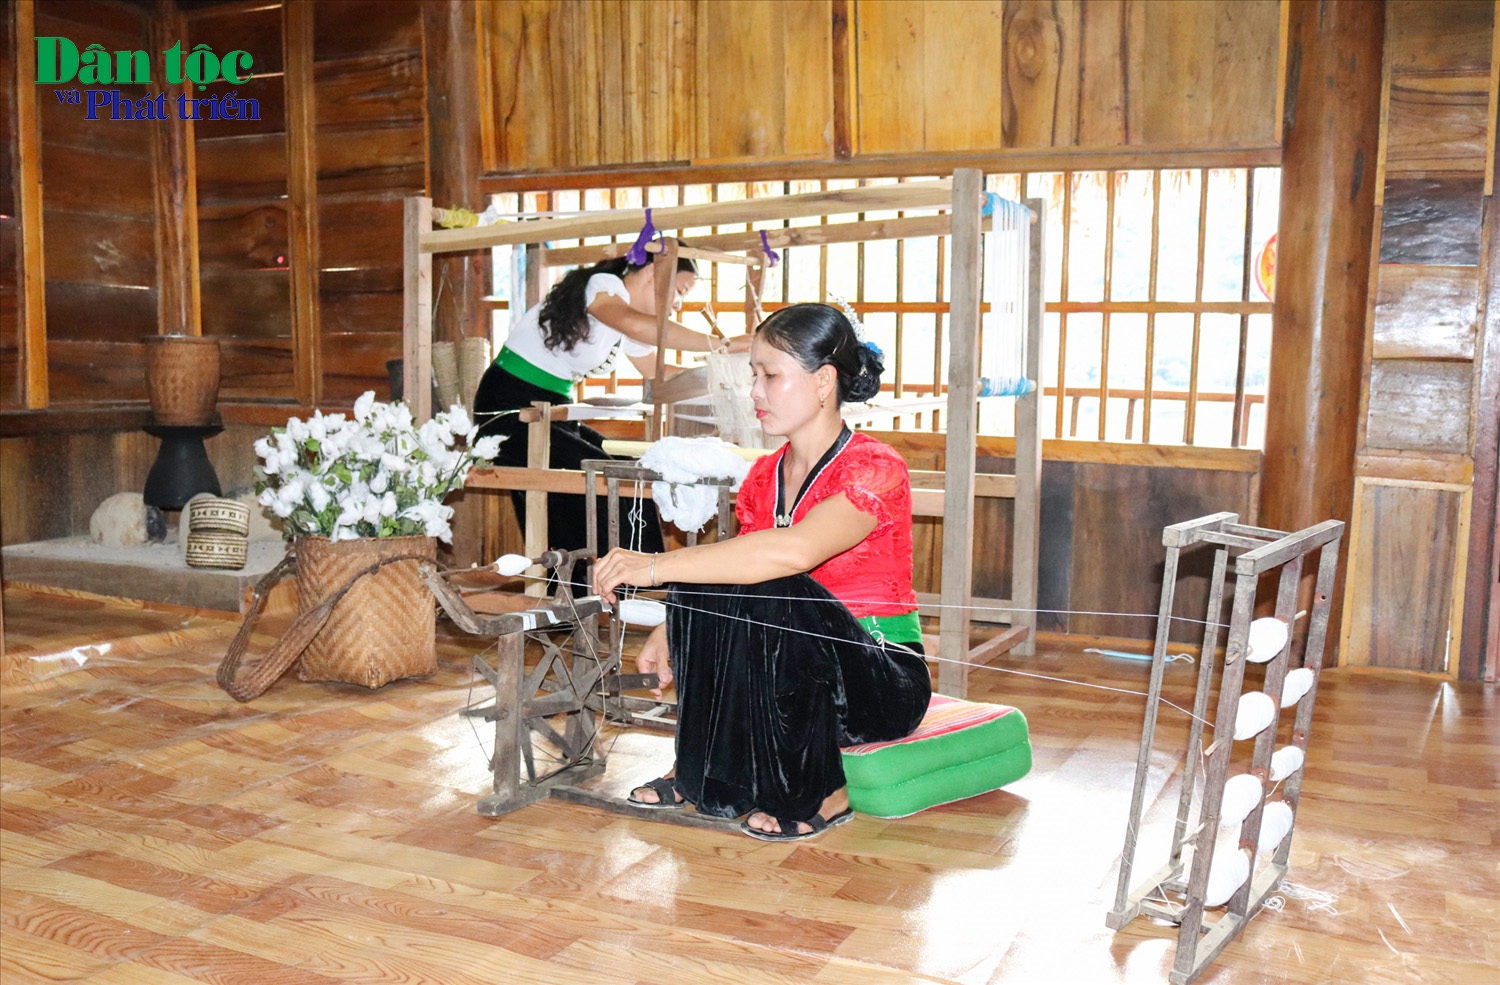 Vẻ đẹp trong văn hóa của người Thái không chỉ qua bộ áo cóm, chiếc khăn piêu, mà còn toát lên ngay từ trong tâm hồn dung dị, trong cuộc sống sinh hoạt hàng ngày. Phụ nữ Thái nổi tiếng nấu ăn ngon với nhiều món ẩm thực độc đáo, giỏi ca hát nên đời sống văn hóa tinh thần khá phong phú